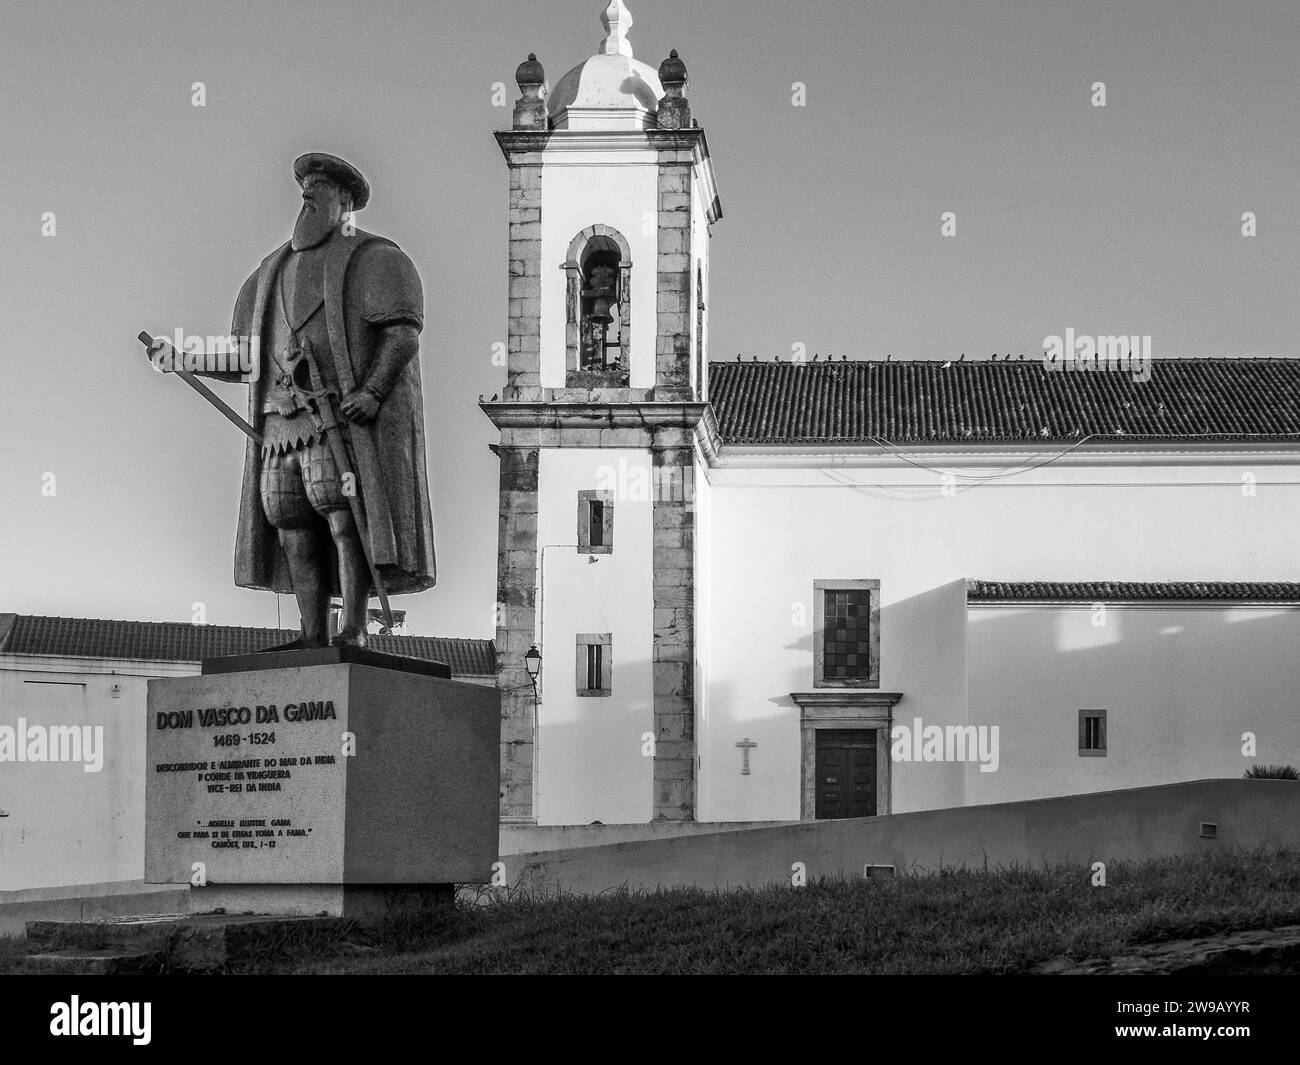 Statue de Dom Vasco Da Gama avec l'église catholique Igreja Matriz do Salvador de Sines dans la ville de Sines dans la région Costa Azul au Portugal Banque D'Images